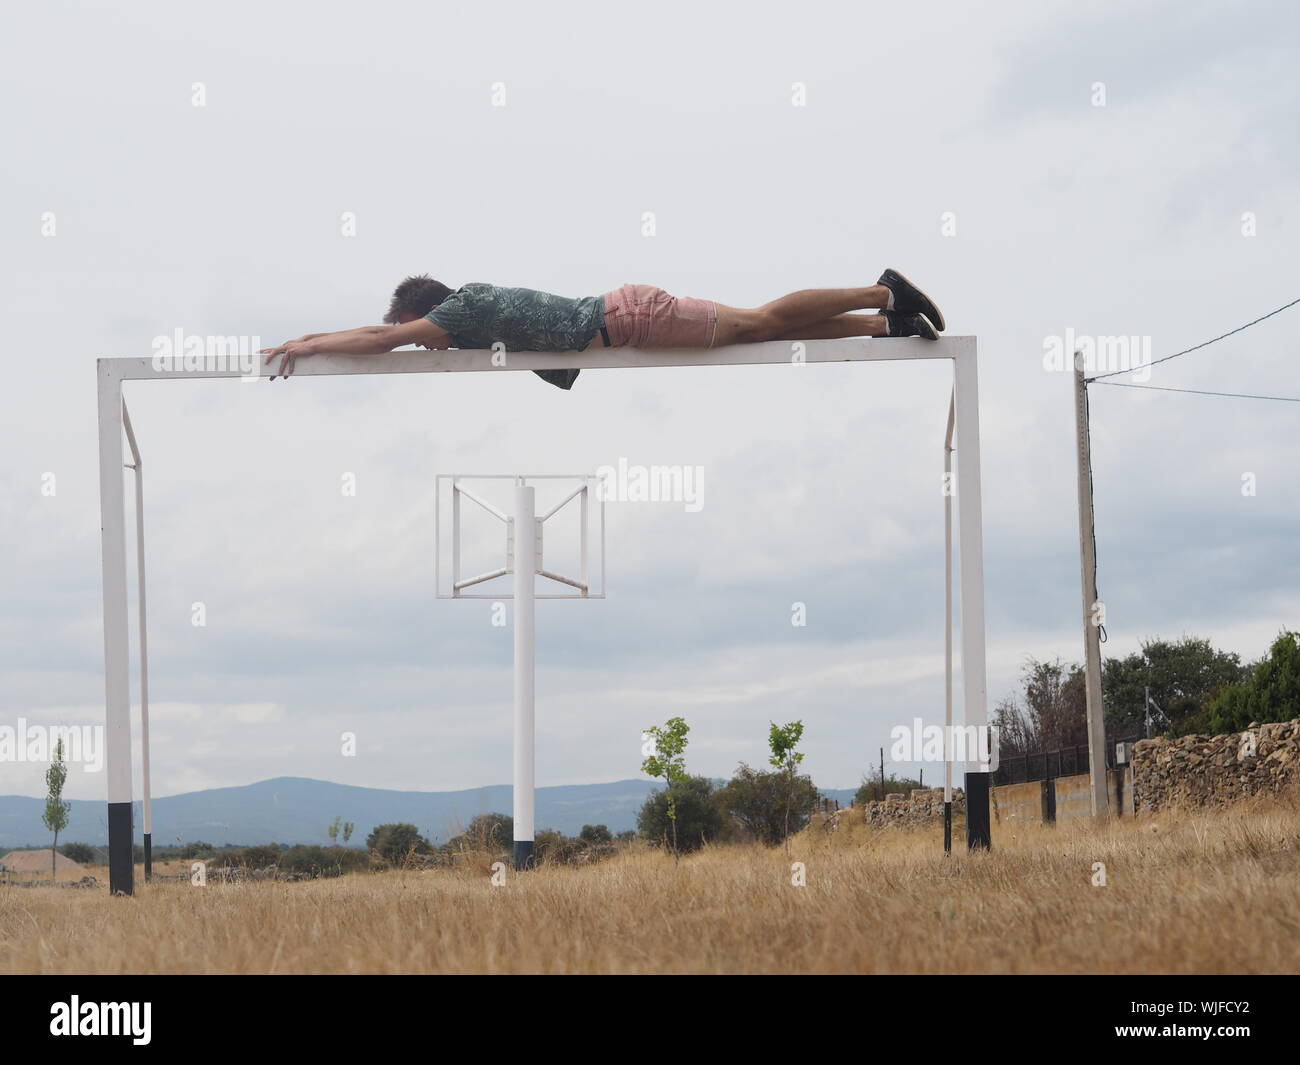 La longitud total del hombre descansando sobre la meta de fútbol en campo de hierba contra el cielo nublado Foto de stock